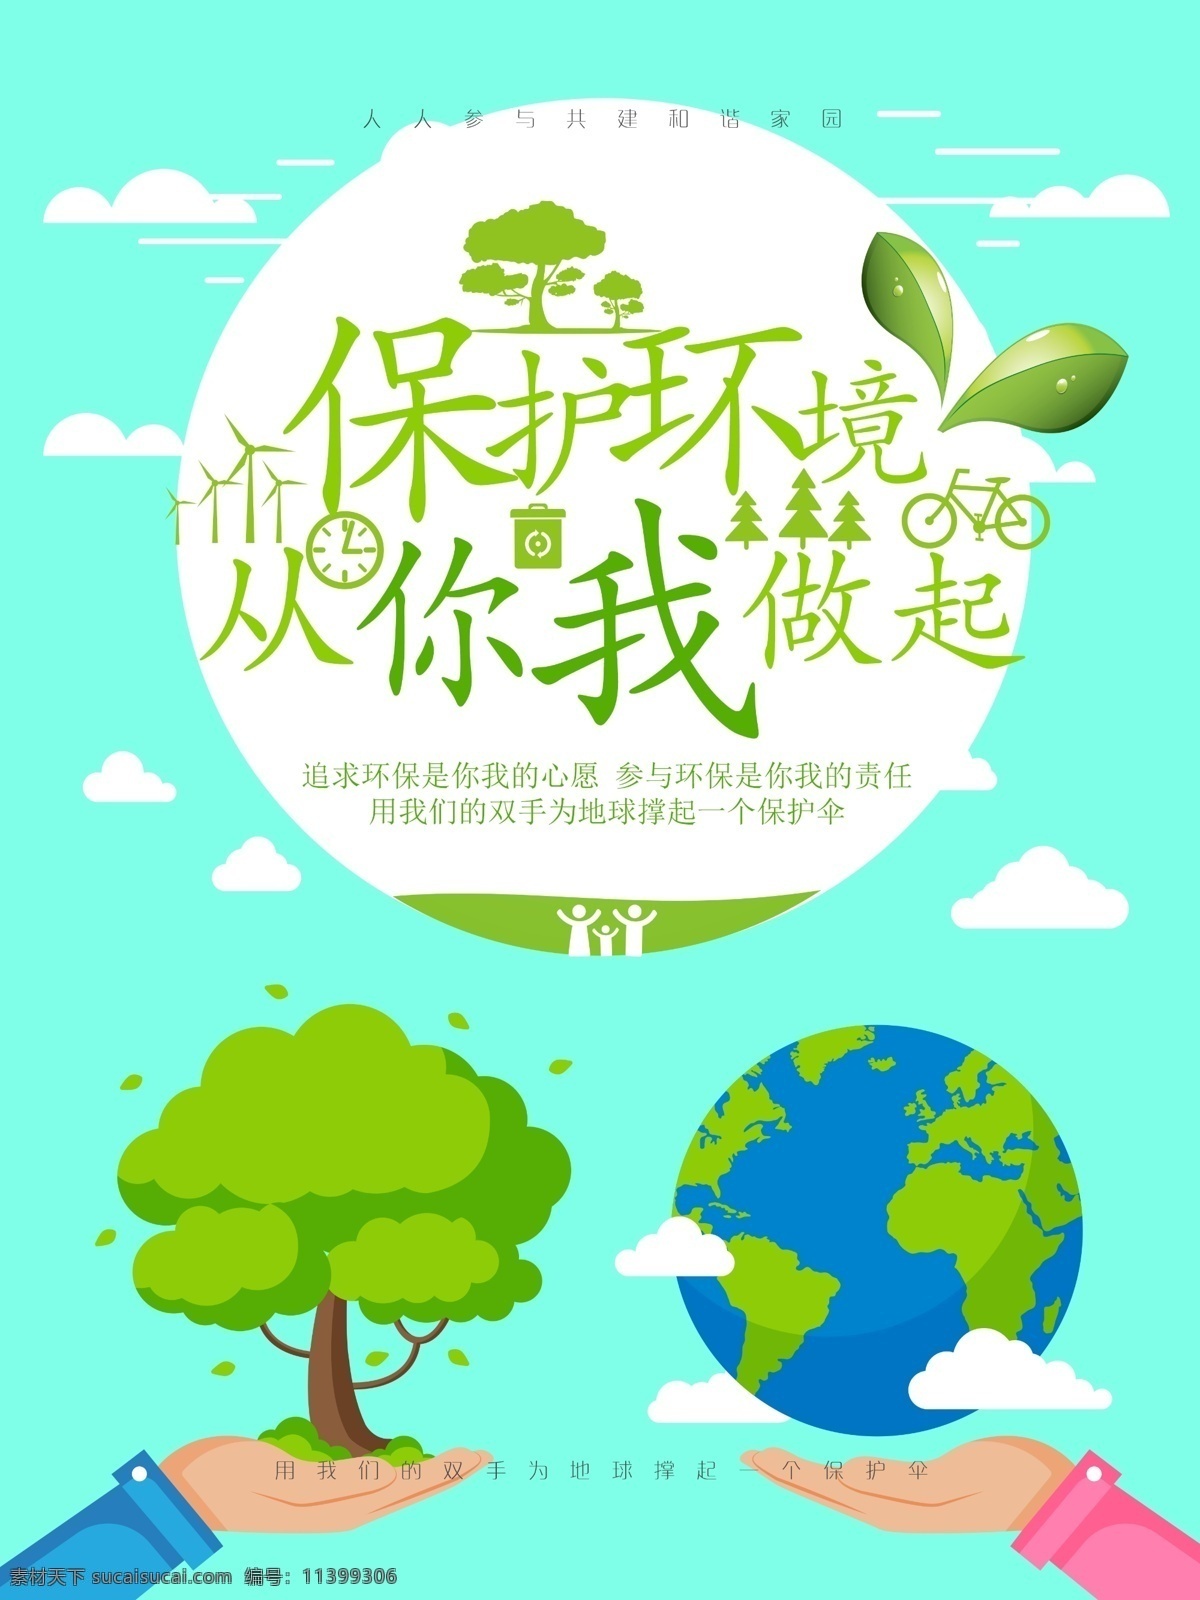 保护 环境 你我 做起 环保 宣传海报 2017 6月5日 世界环境日 国际环境日 公益 地球 保护环境 植树造林 生态环境 保护地球 地球日 环保海报 环境保护 绿色